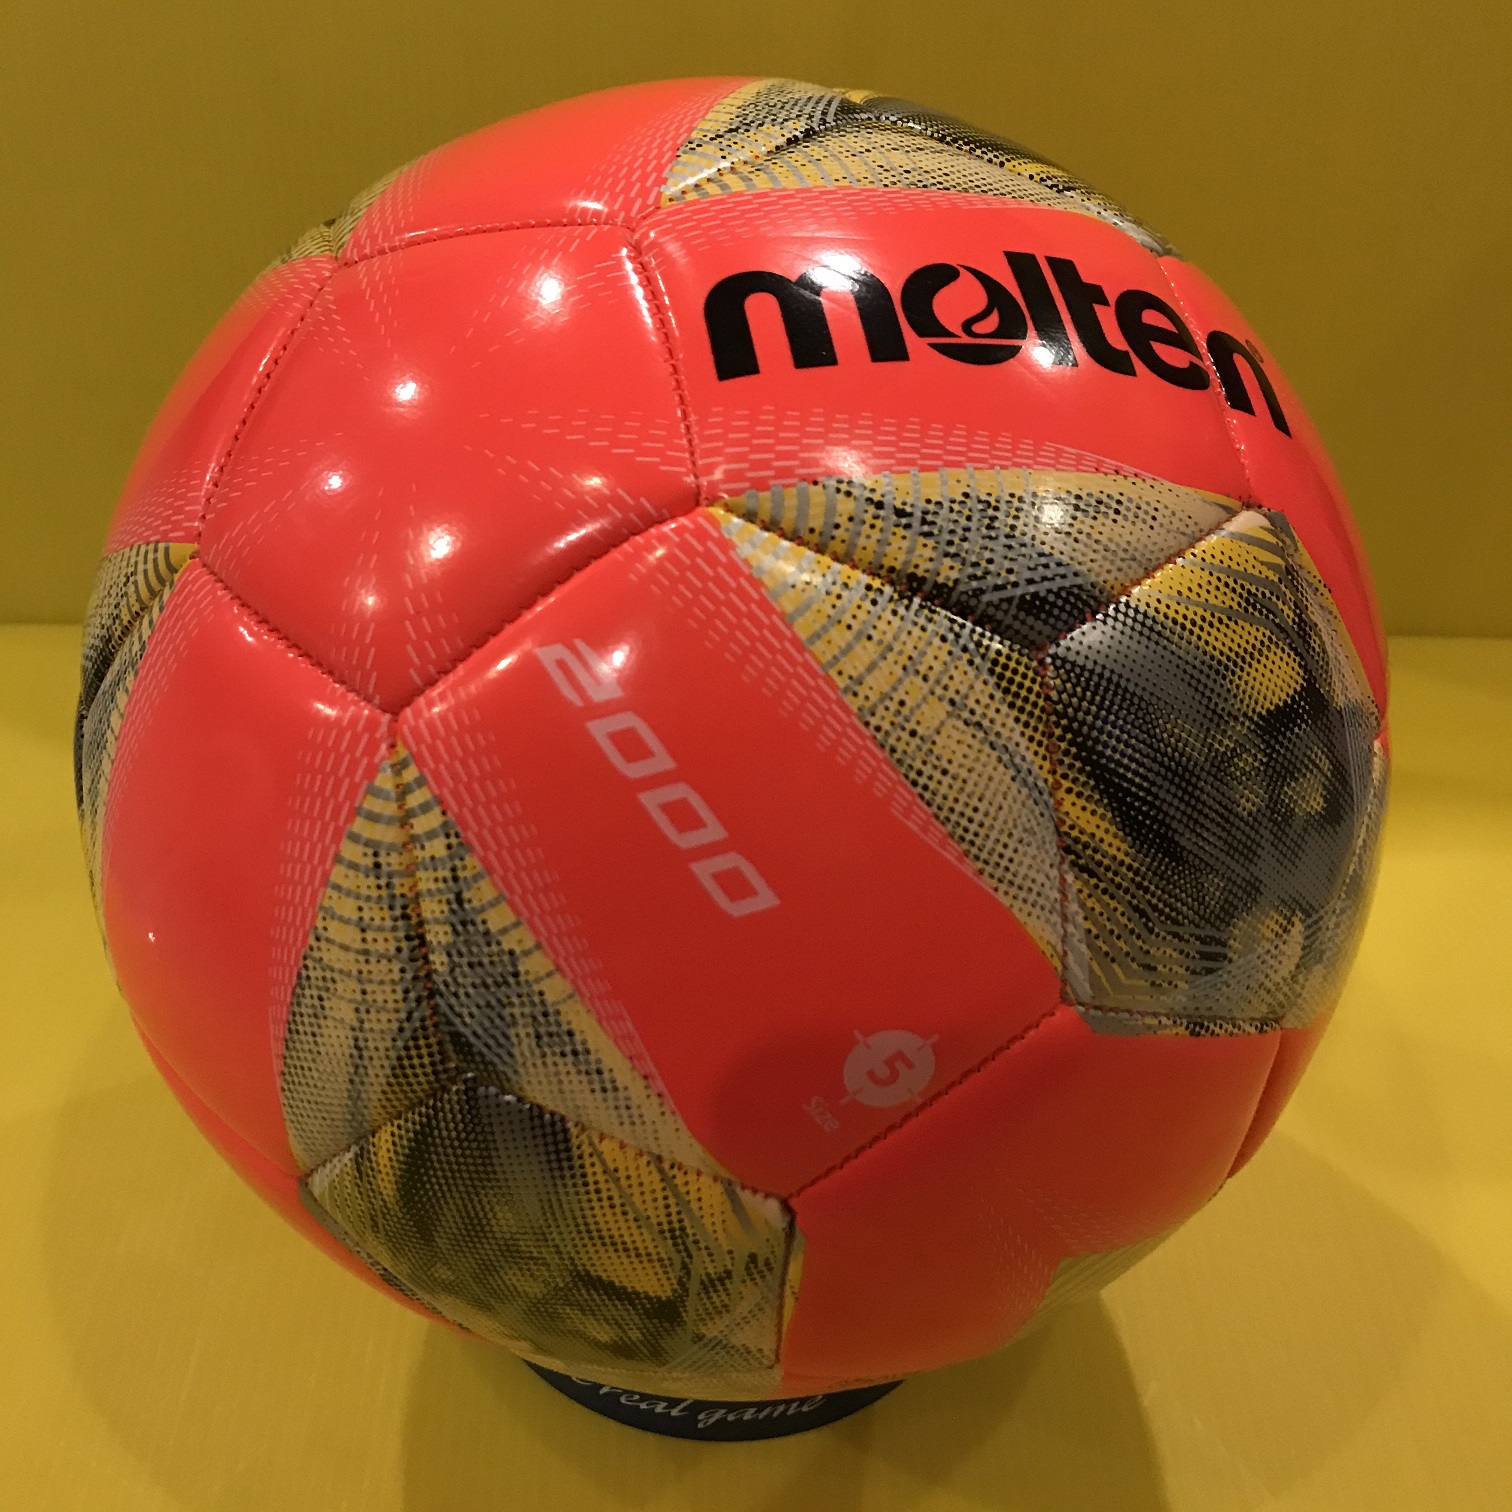 ลูกฟุตบอล ลูกบอล Molten F5A2000-RY เบอร์5 ลูกฟุตบอลหนังเย็บ ของแท้ 100%